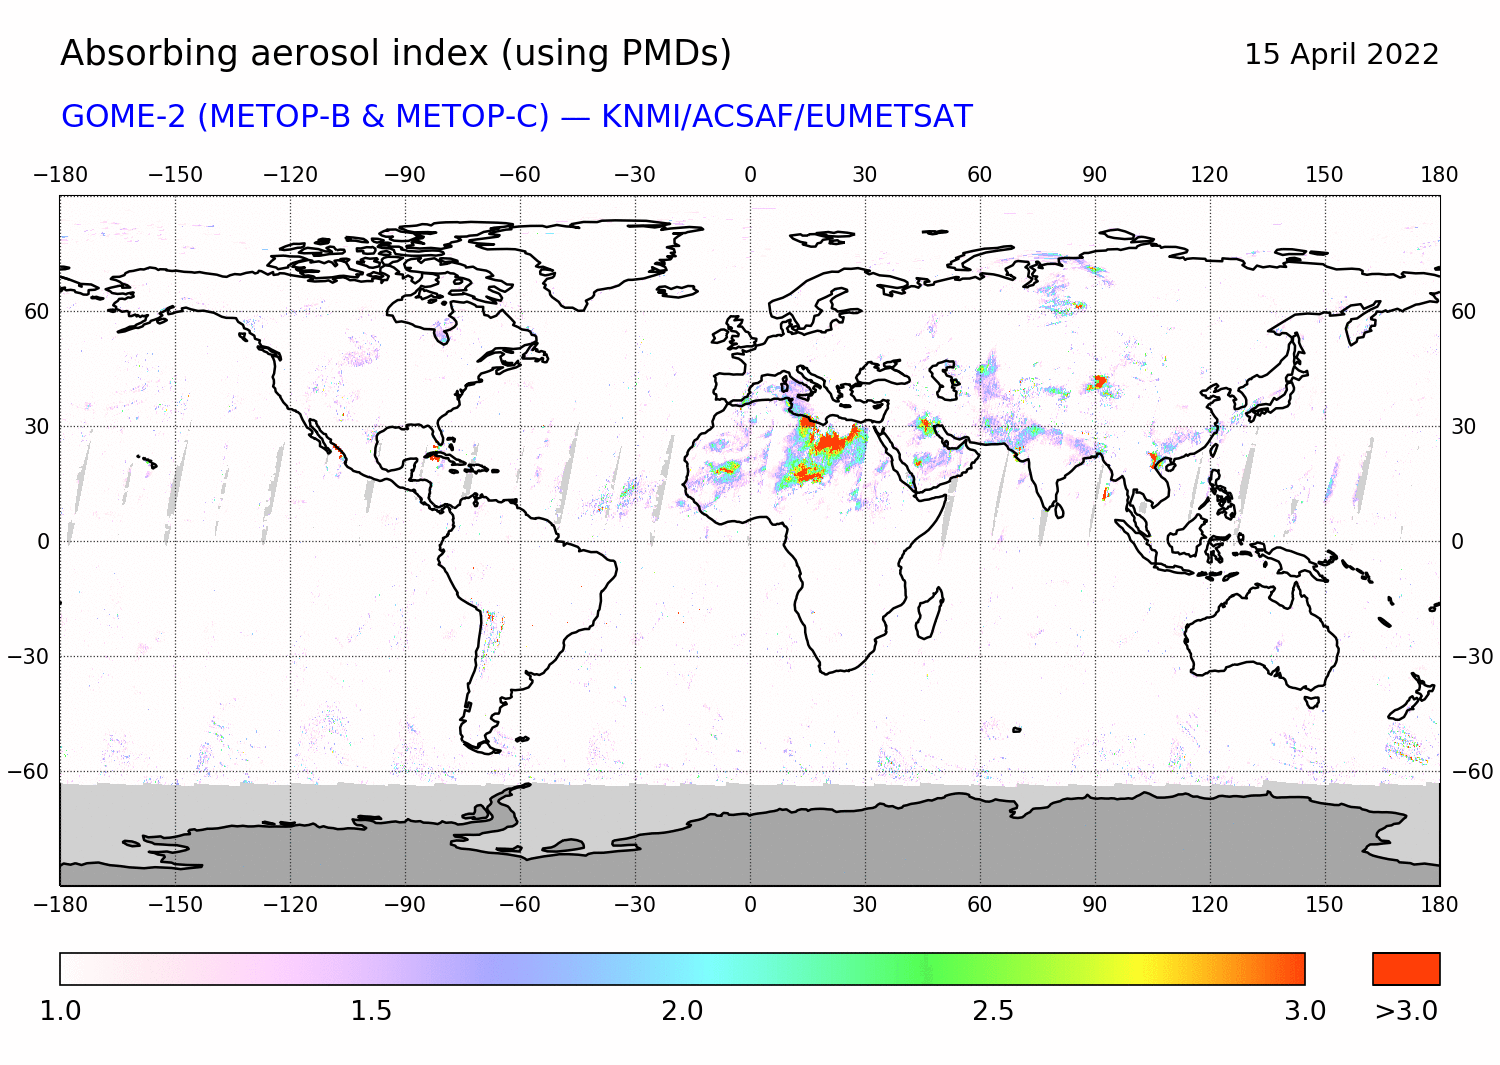 GOME-2 - Absorbing aerosol index of 15 April 2022